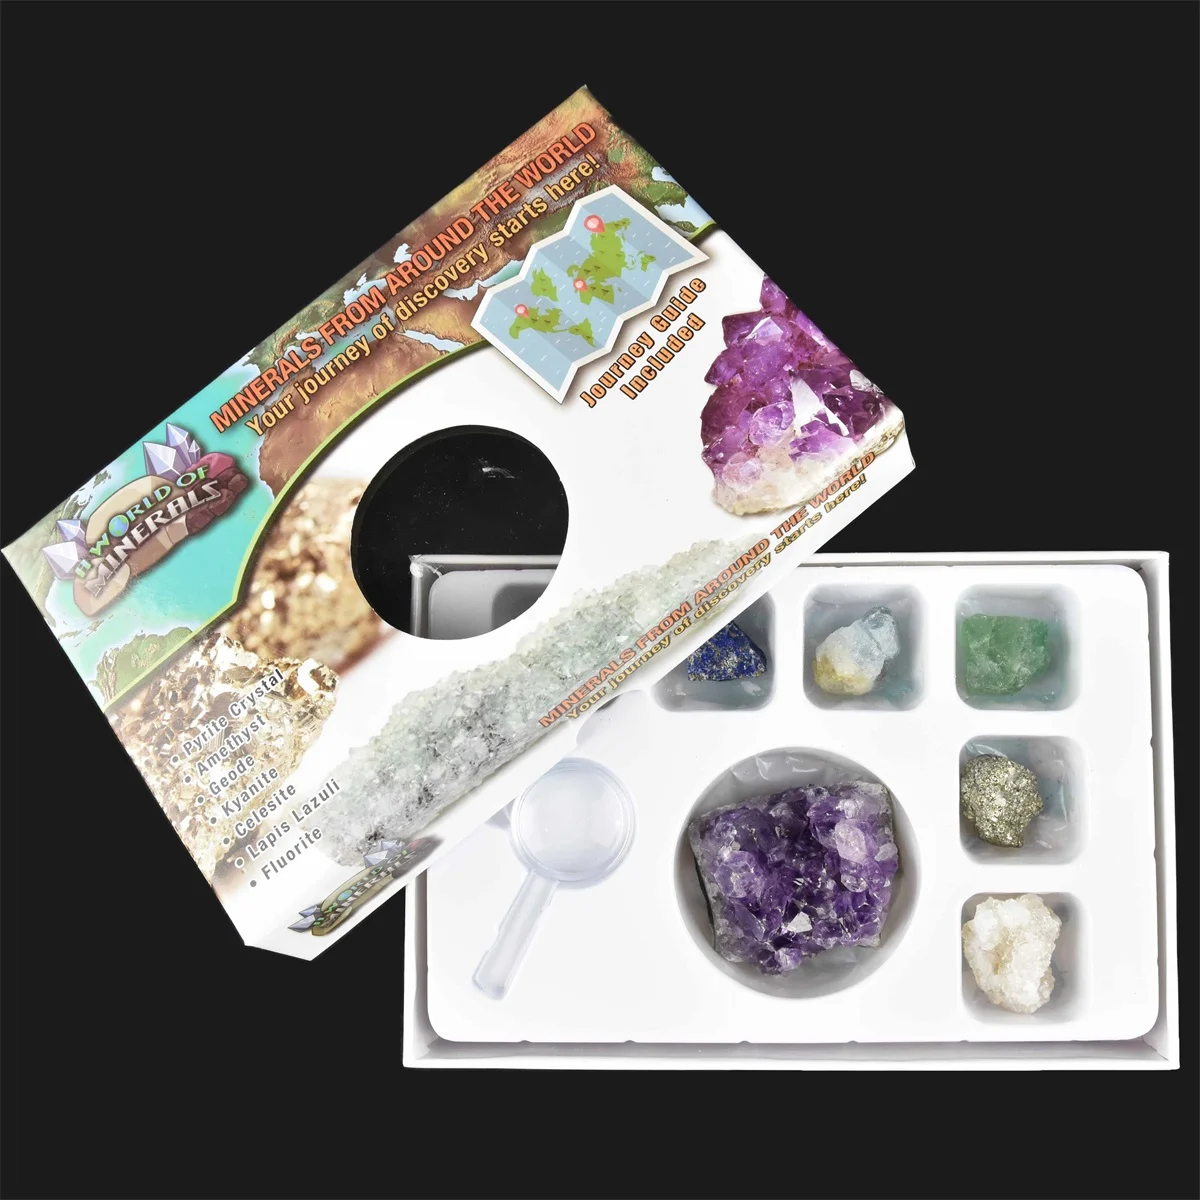 MINERALS AROUND THE WORLD 2-6cm Minerals around the world - Småvarer